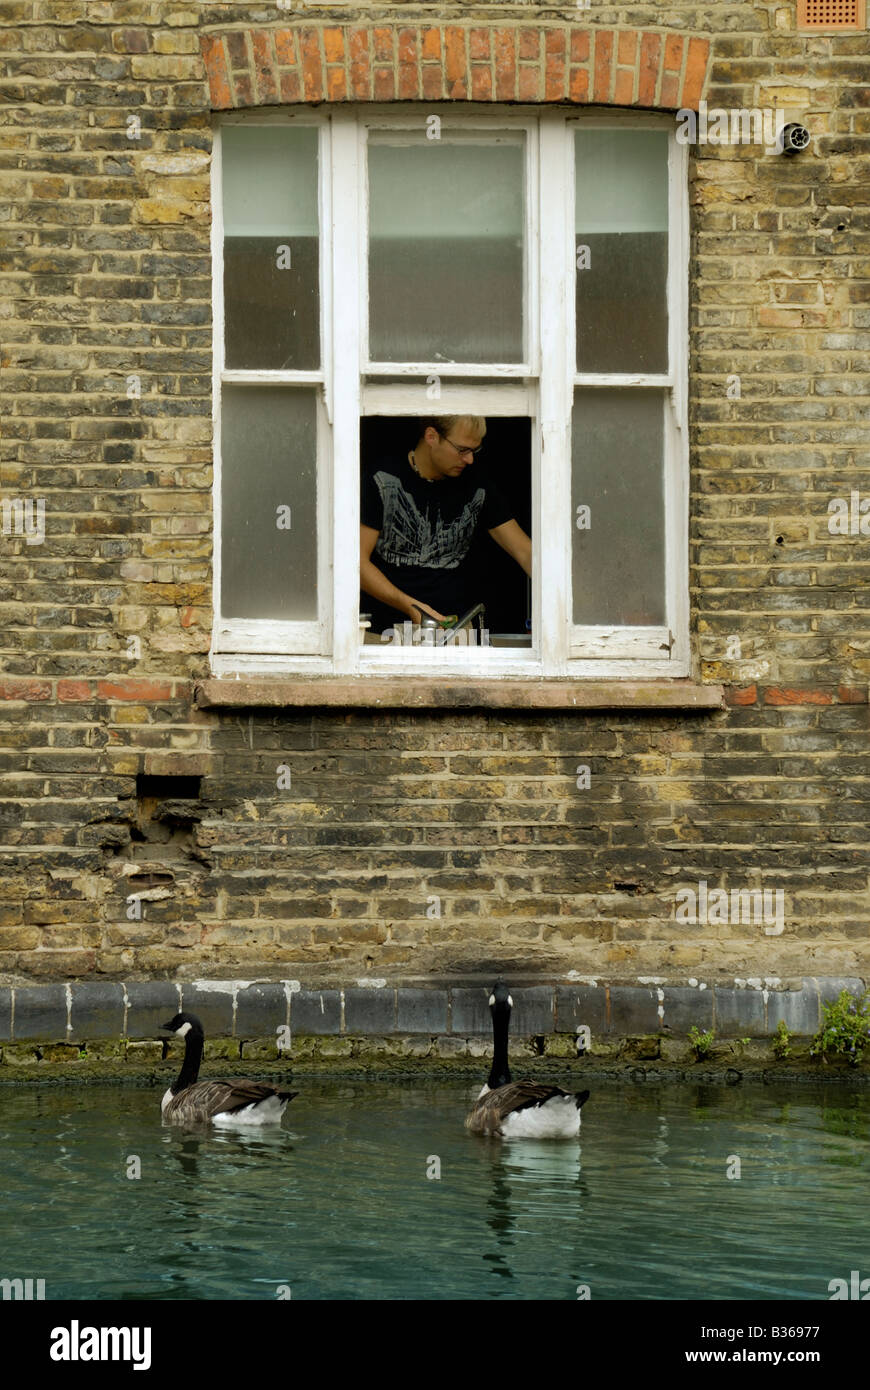 Grand Union Canal, Londres, bien que la vue de la fenêtre de travail de l'homme dans la cuisine pendant que des oies attendre pour l'alimentation Banque D'Images